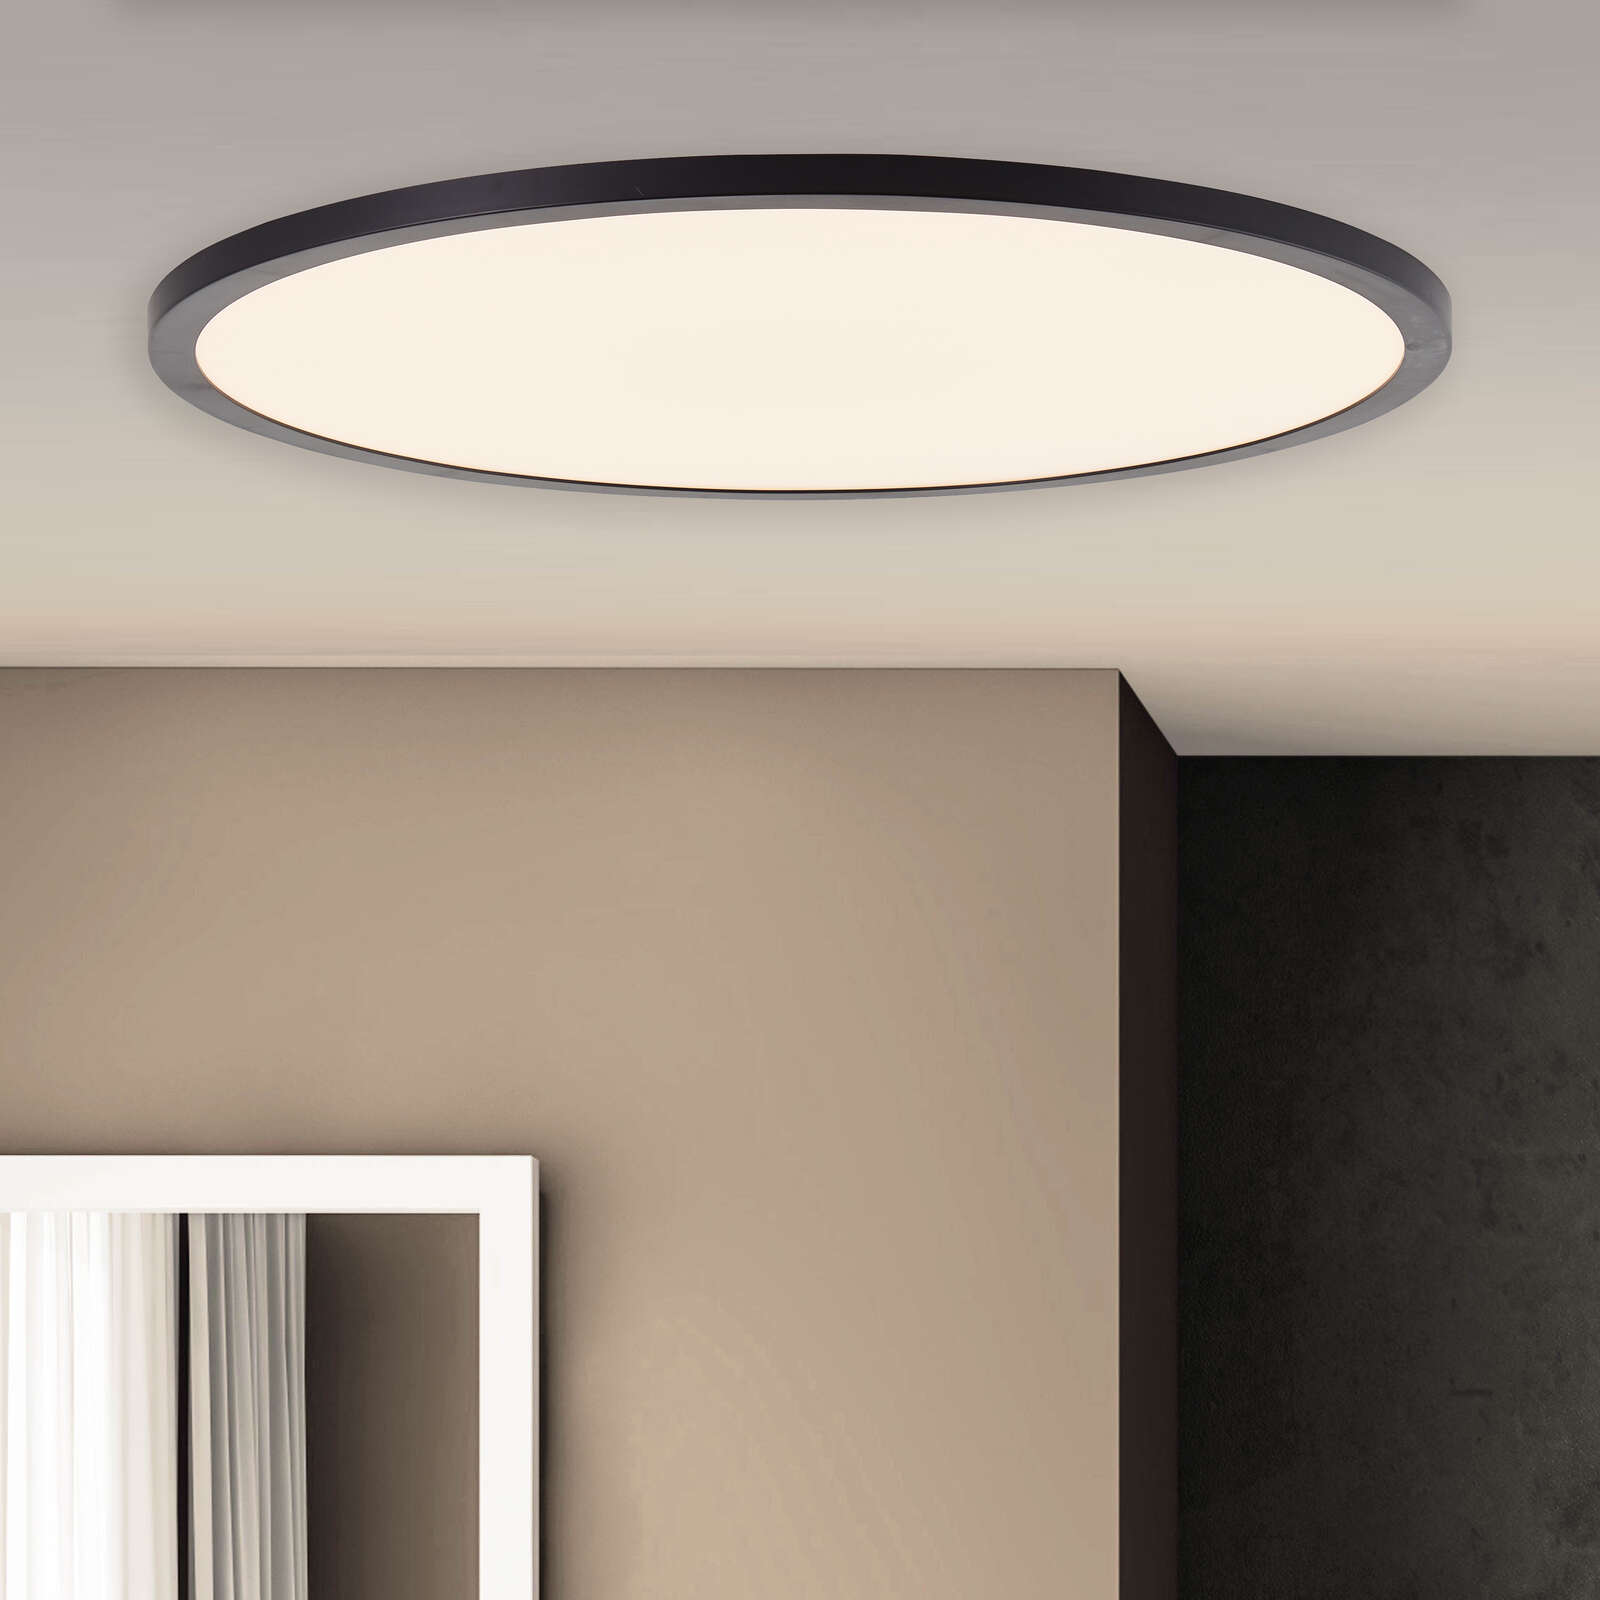             Plastic ceiling light - Selina - Black
        